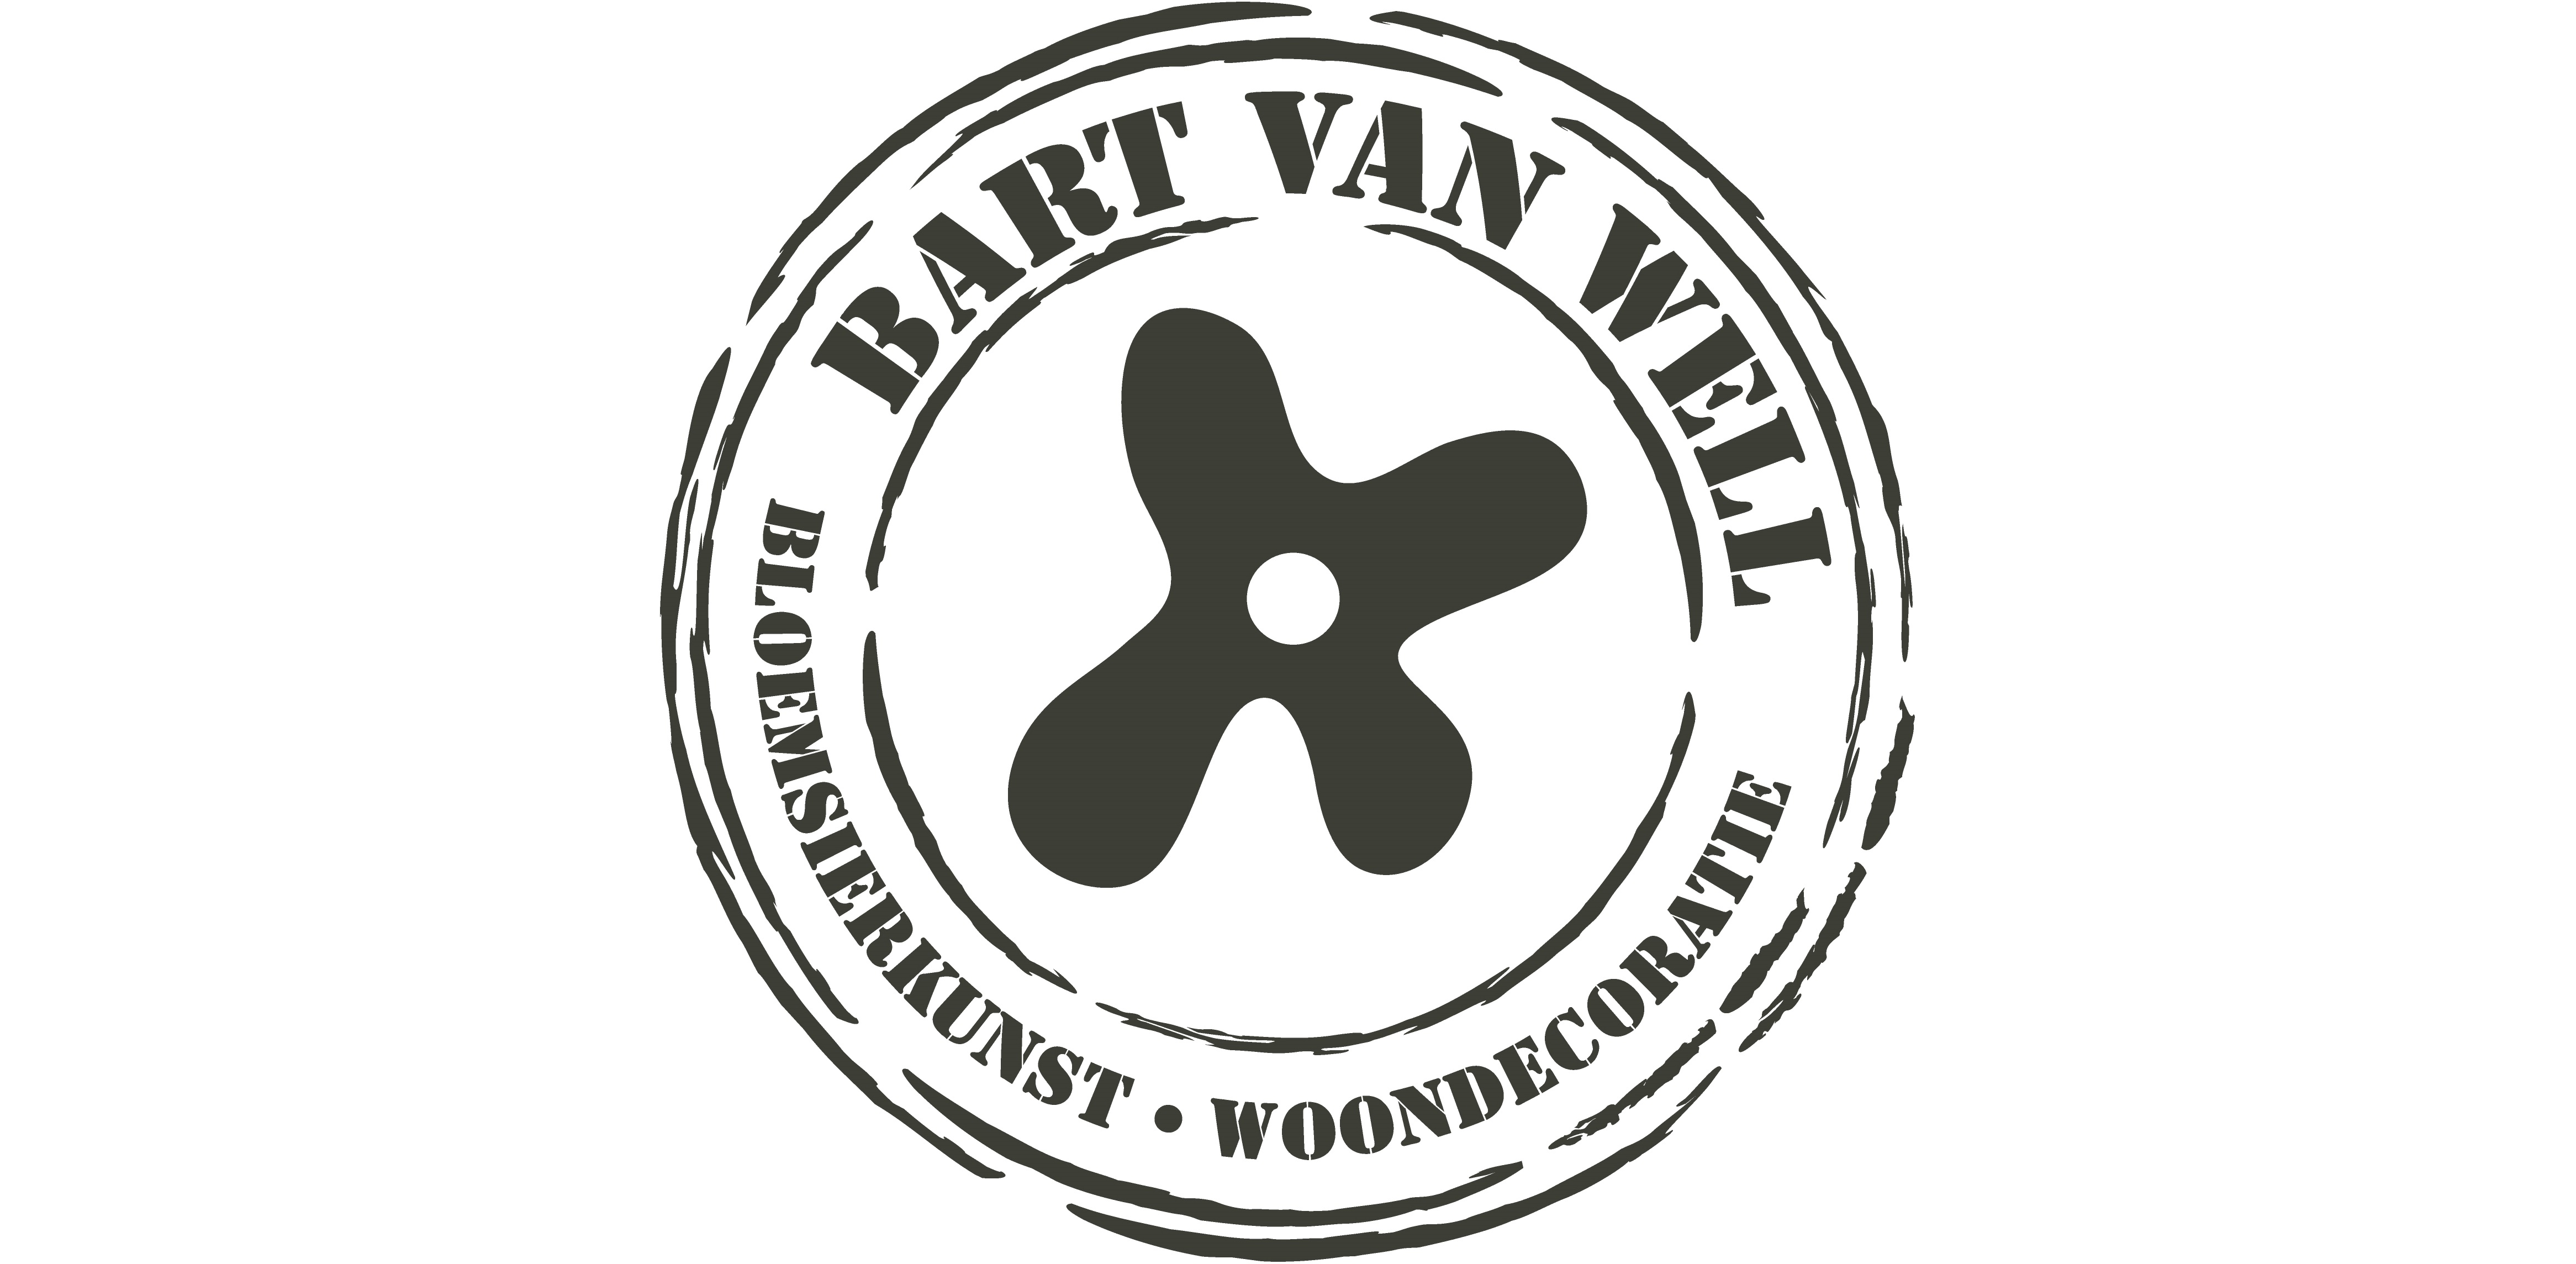 Bart van Well